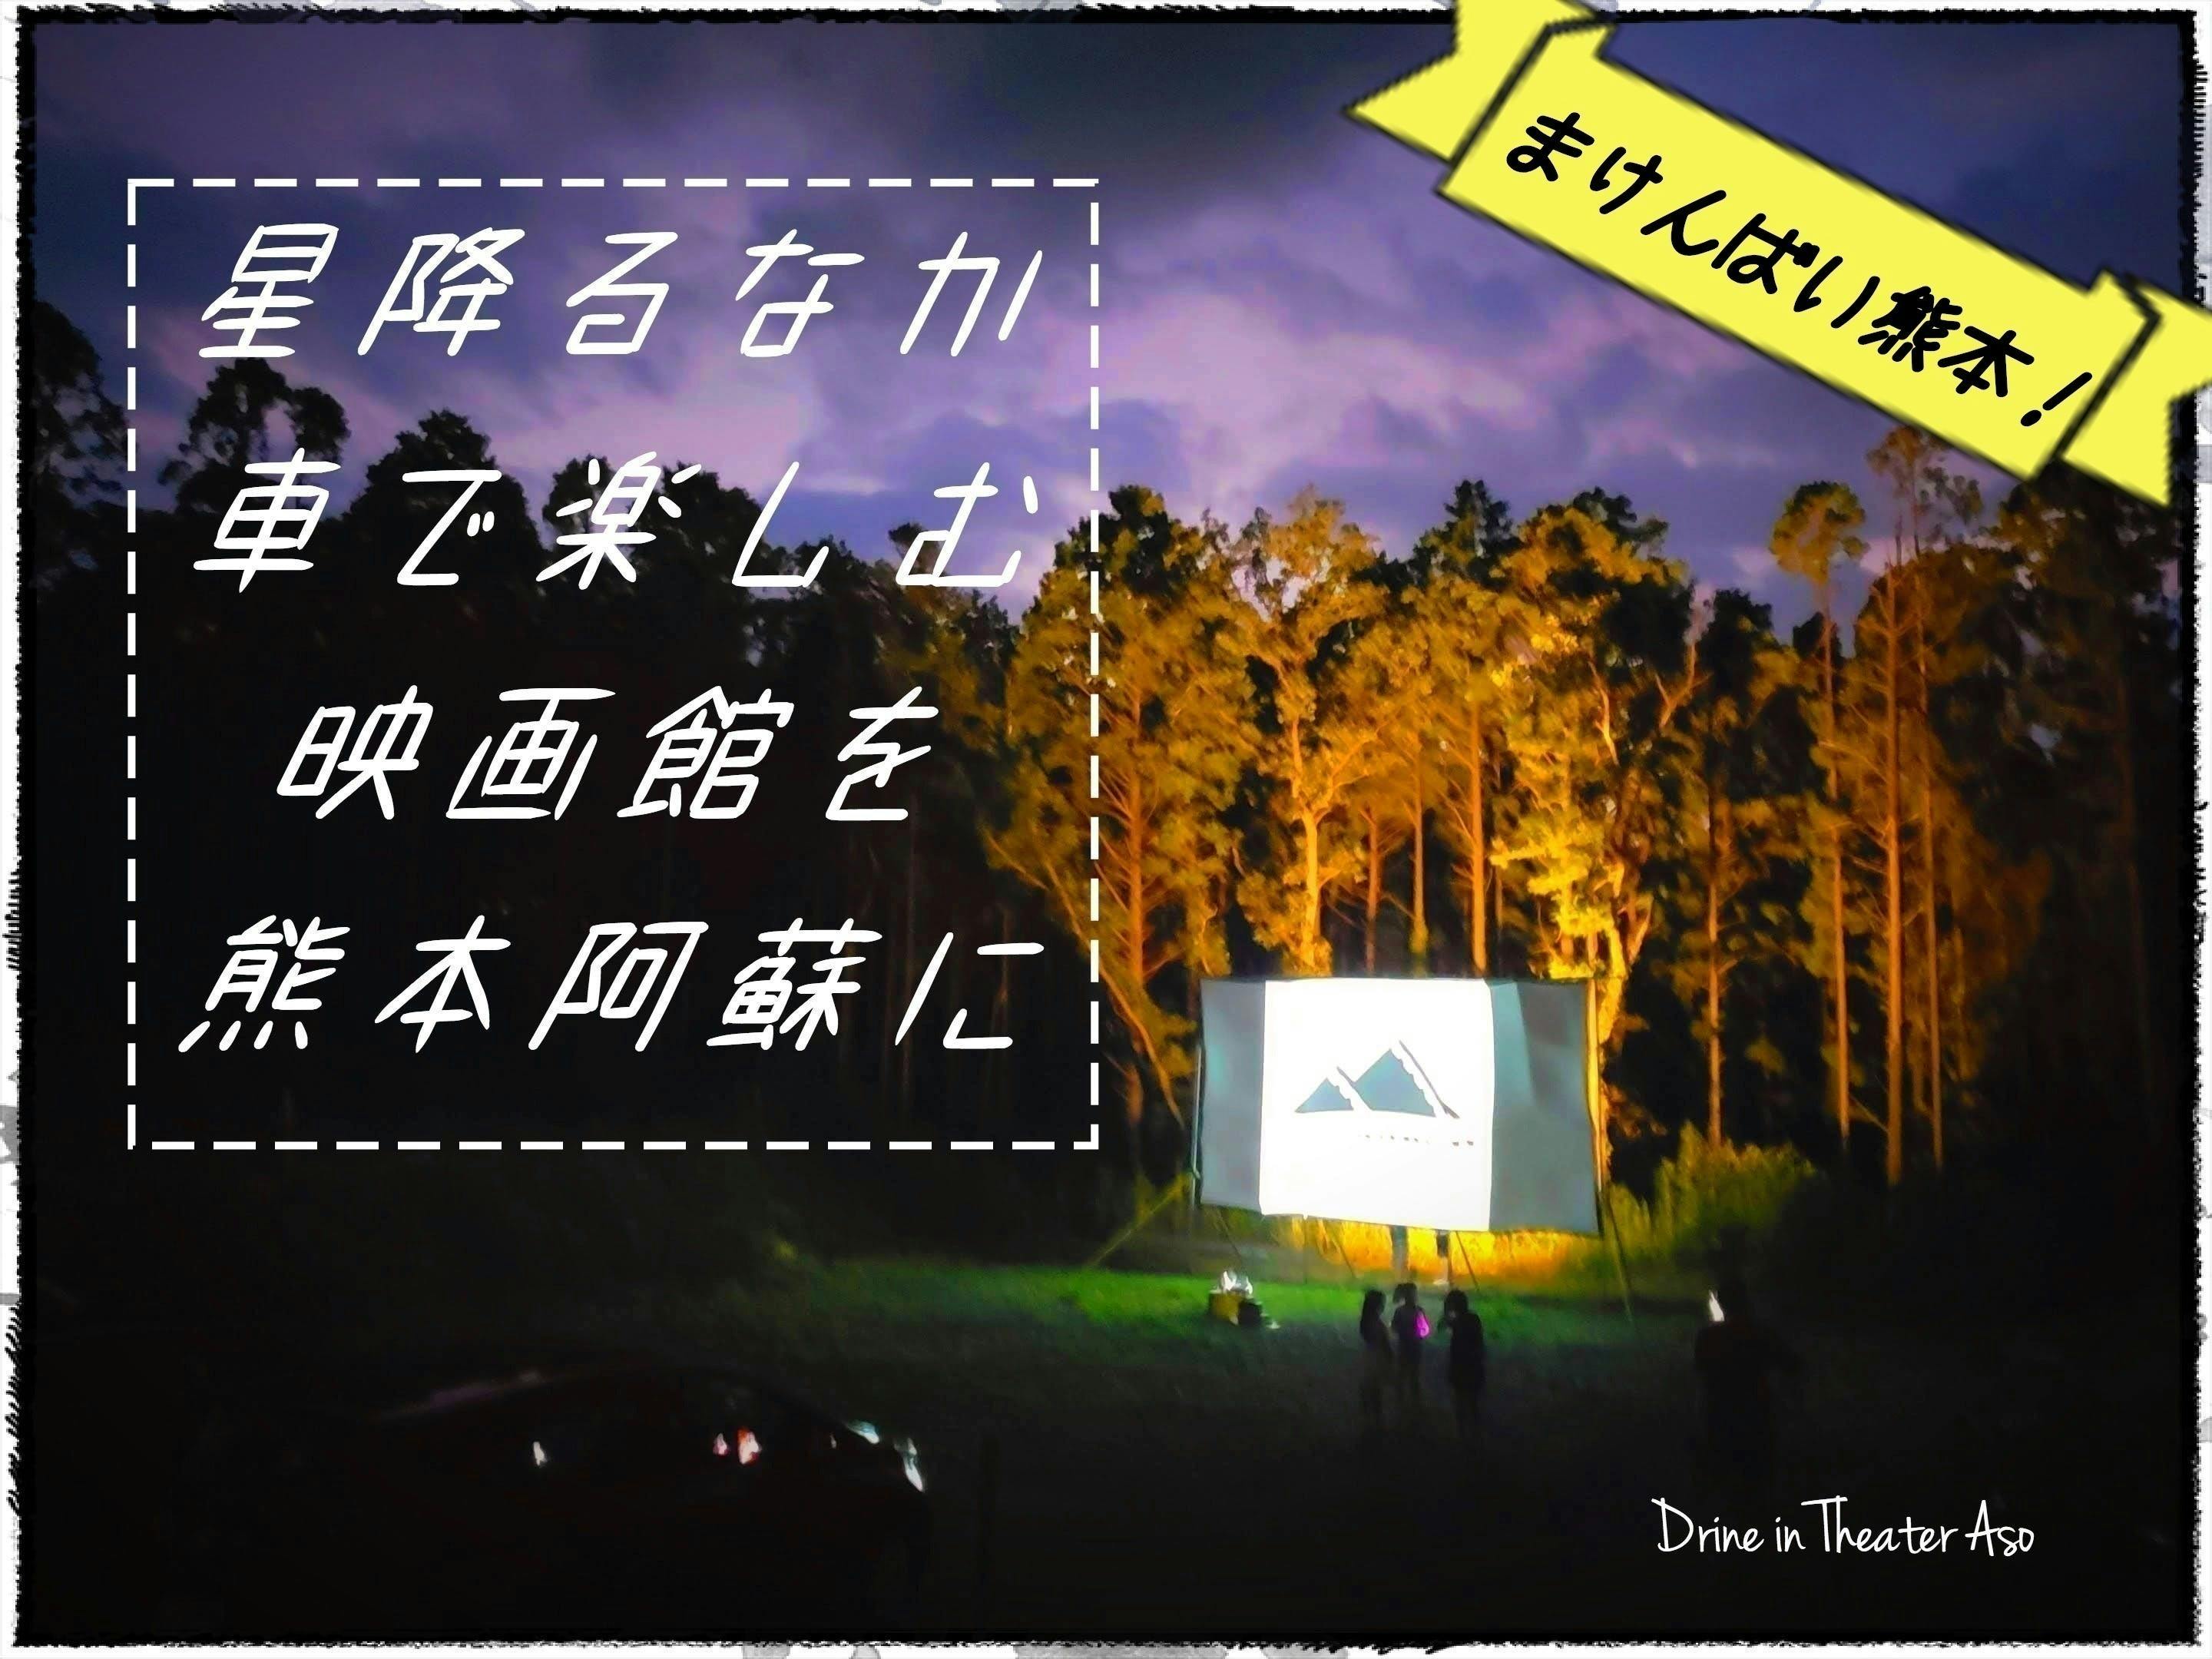 星空のもと車で楽しめる映画館を 熊本でドライブインシアターを復活させたい Campfire キャンプファイヤー